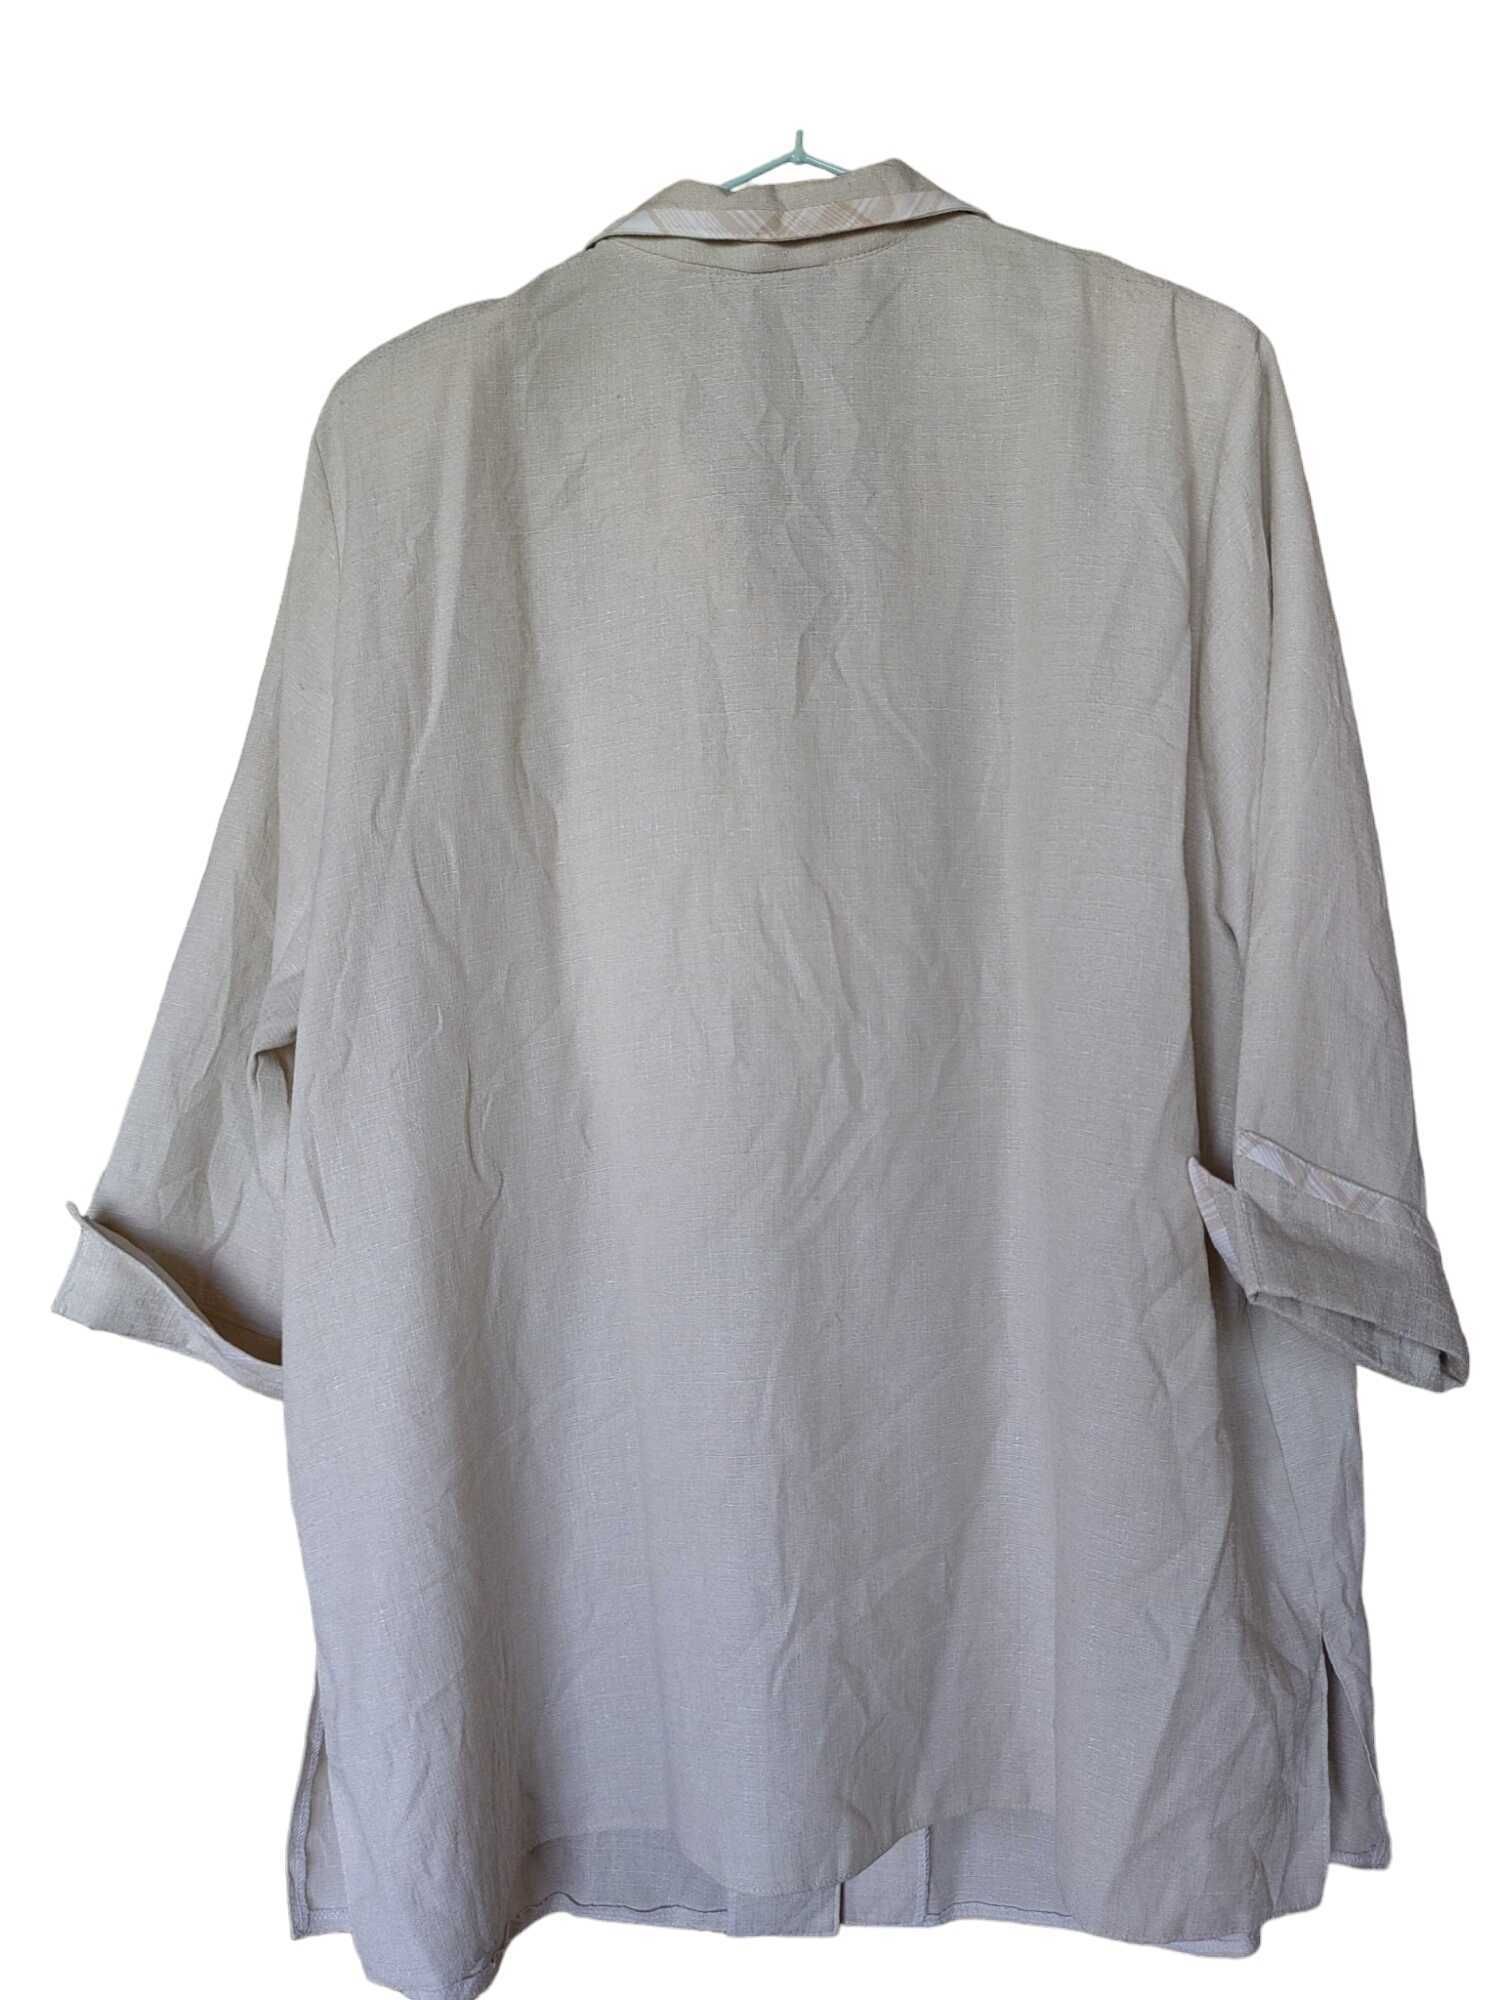 Дамска риза с джобове Izabel, 65% полиестер, Бежова, 74х63 см, XXL